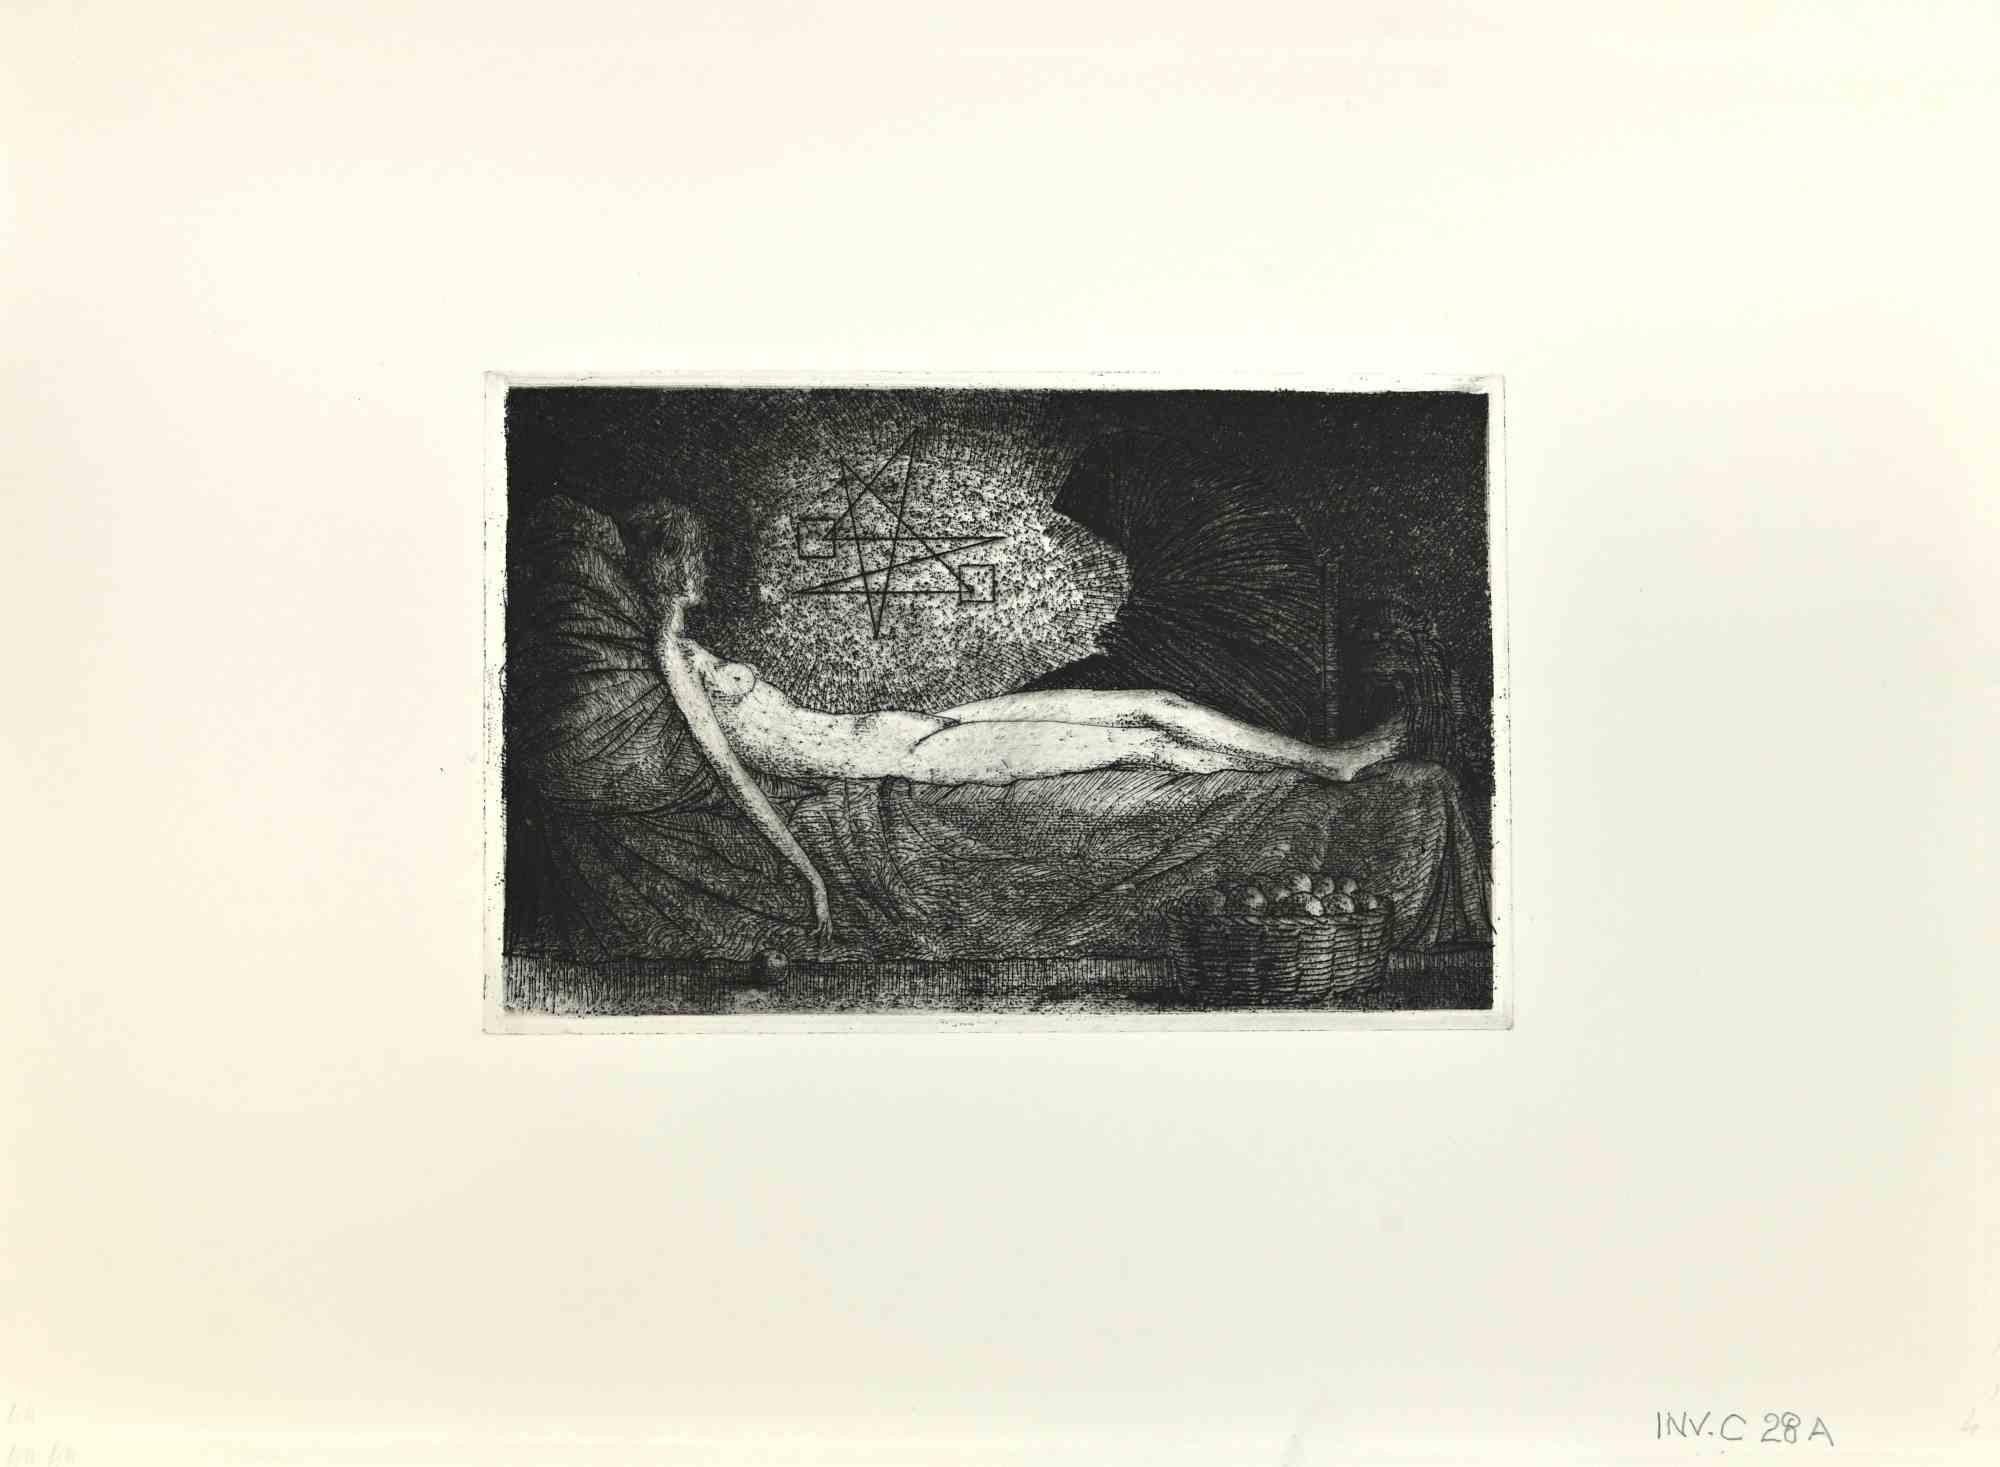 Die Vision ist ein Kunstwerk des zeitgenössischen italienischen Künstlers  Leo Guida (1992 - 2017) in den 1970er Jahren.

Schwarz-Weiß-Radierung auf Papier.

Guter Zustand mit einem leichten Kratzer am linken Rand.

Leo Guida  (1992 - 2017). Mit